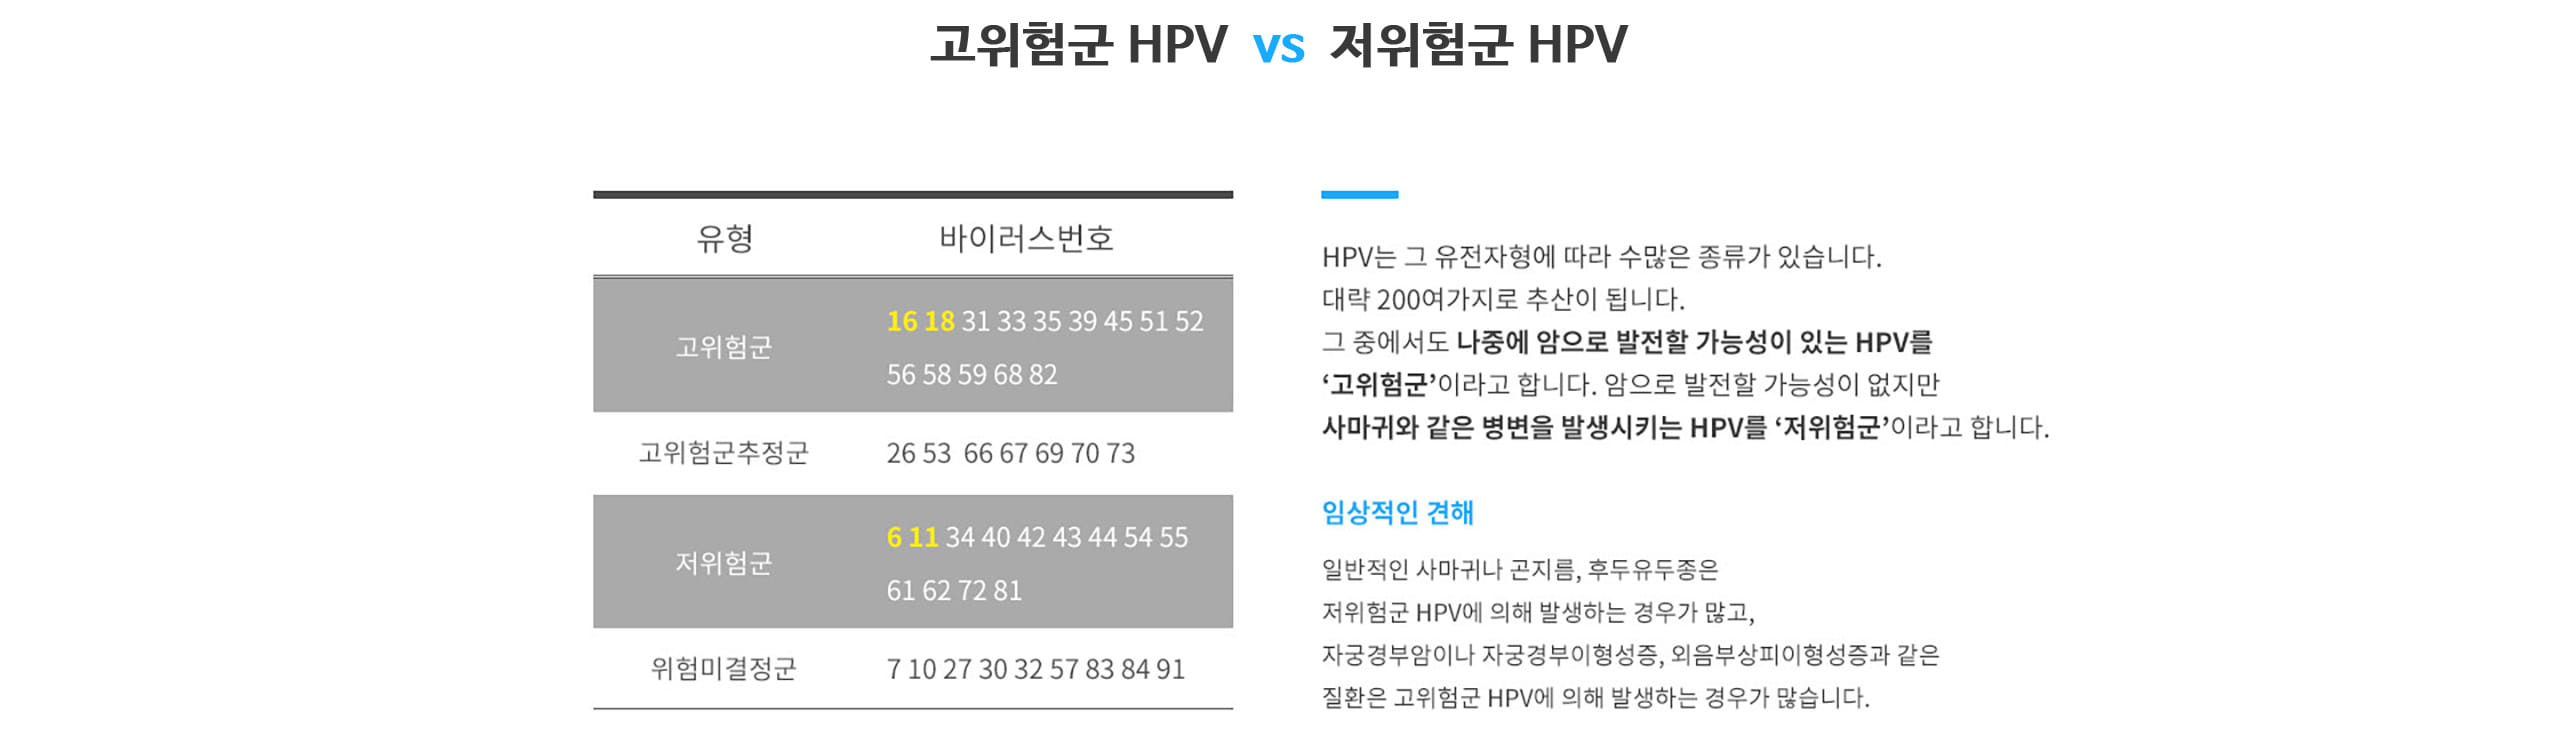 고위험군 HPV와 저위험군 HPV 구분 표